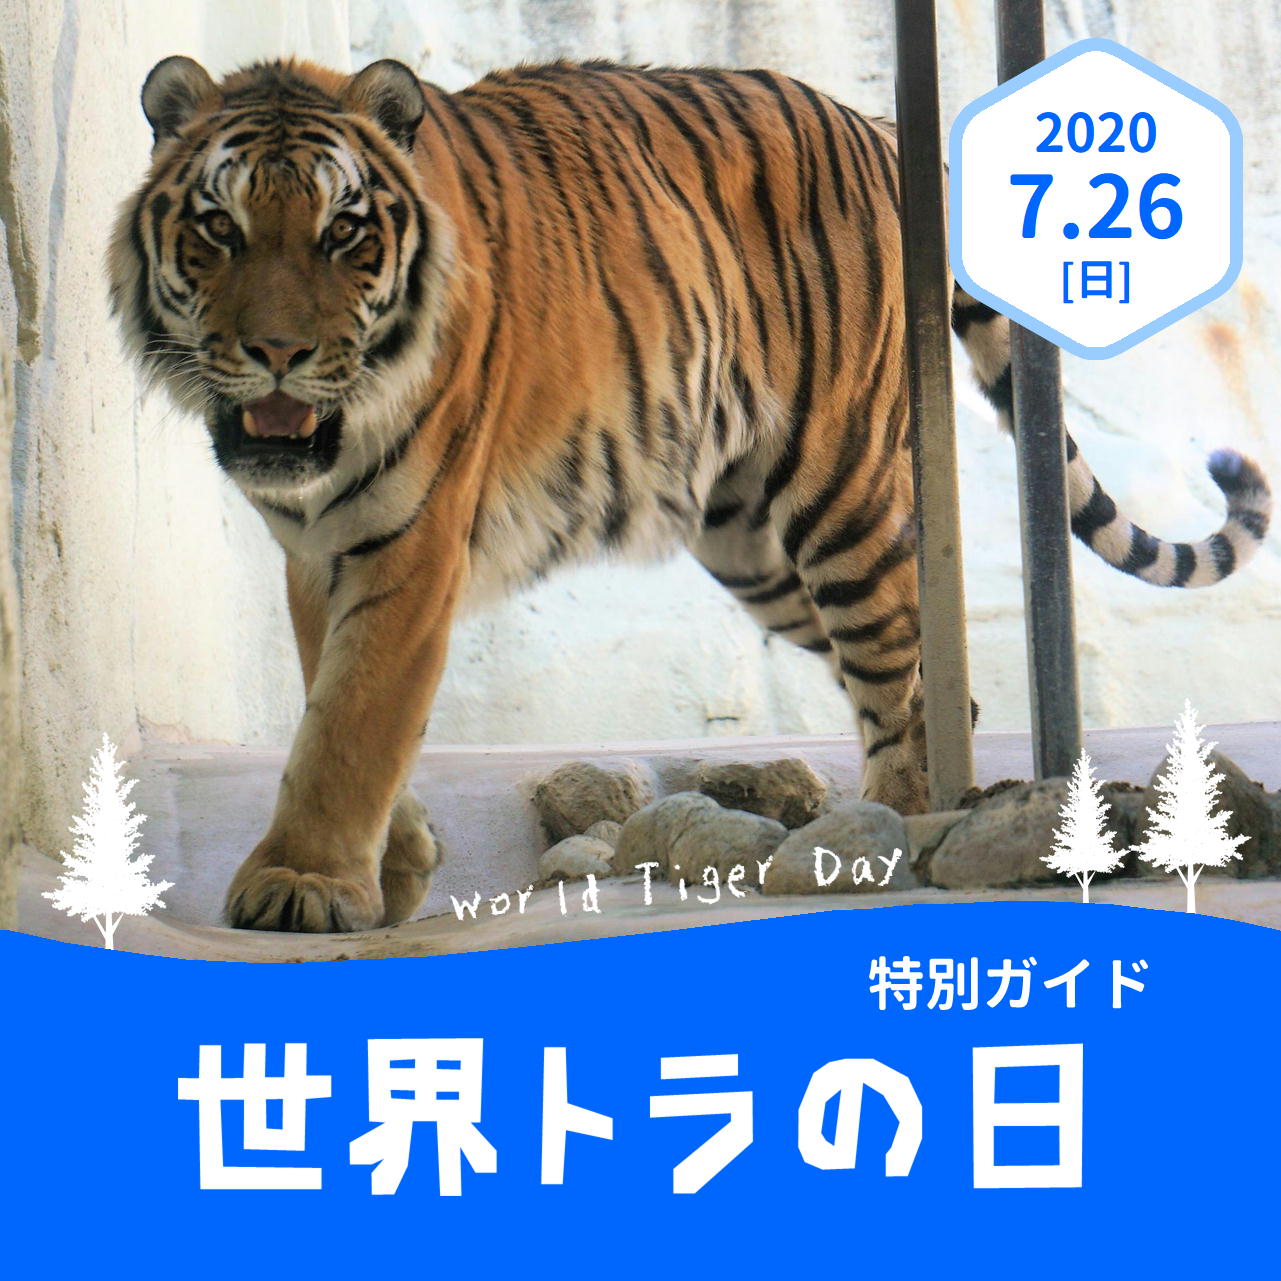 福岡市動物園 世界トラの日 特別ガイド